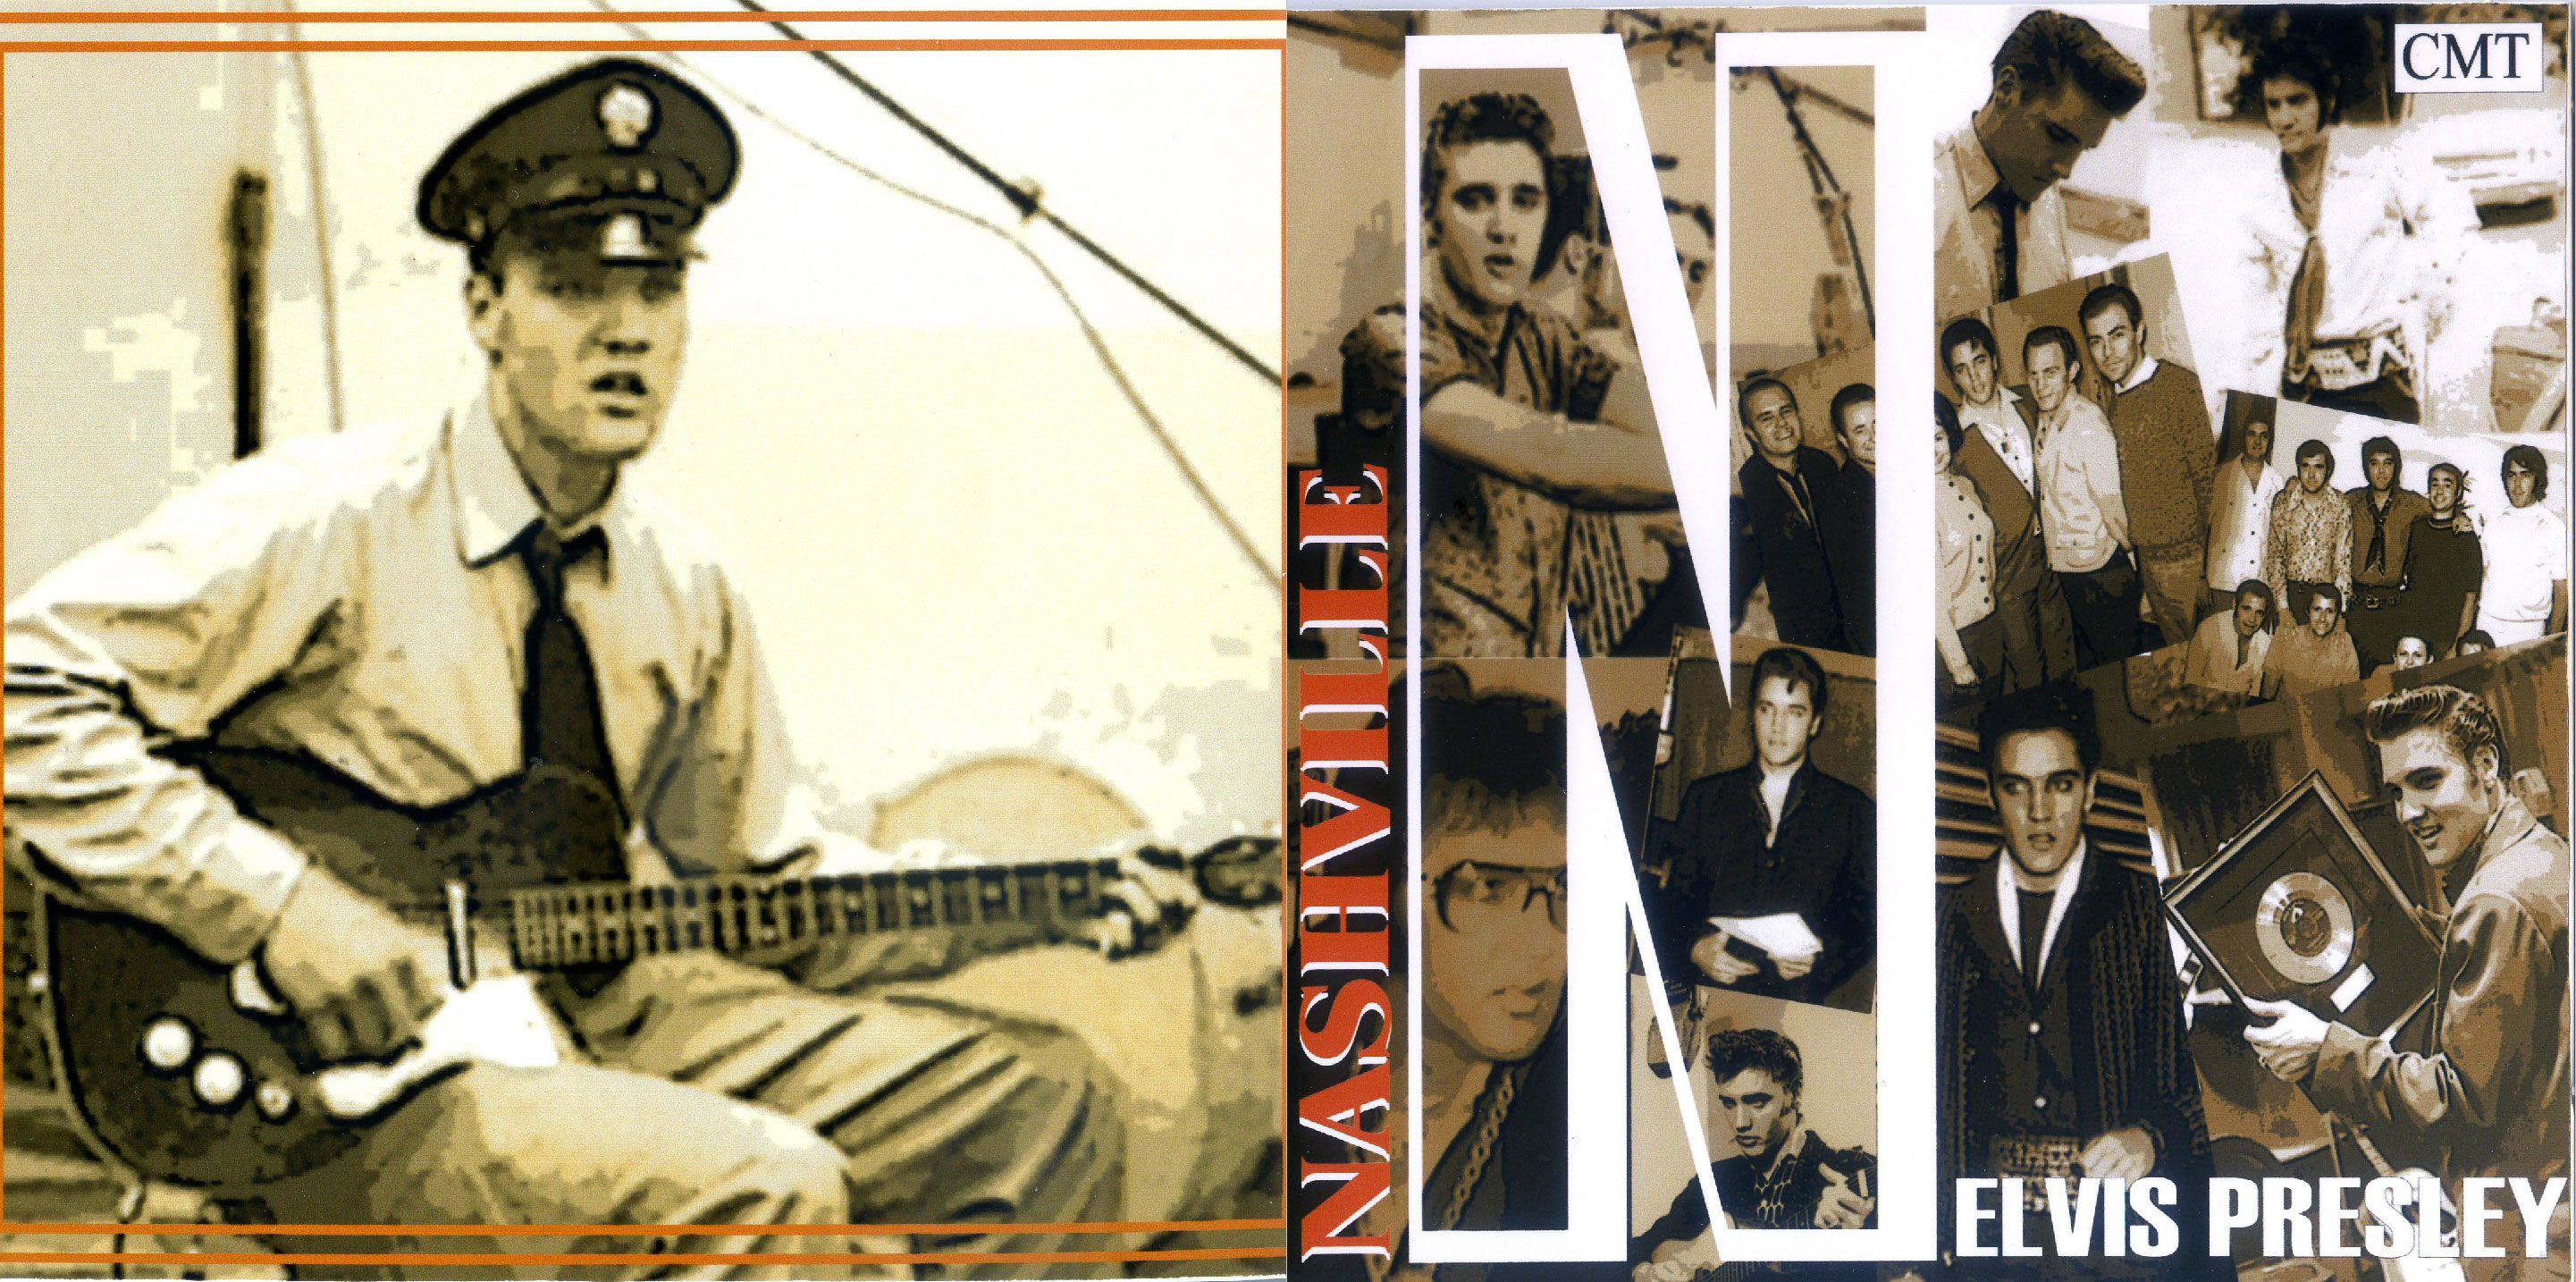 Elvis Presley - Nashville, Vol. 1 [CMT]